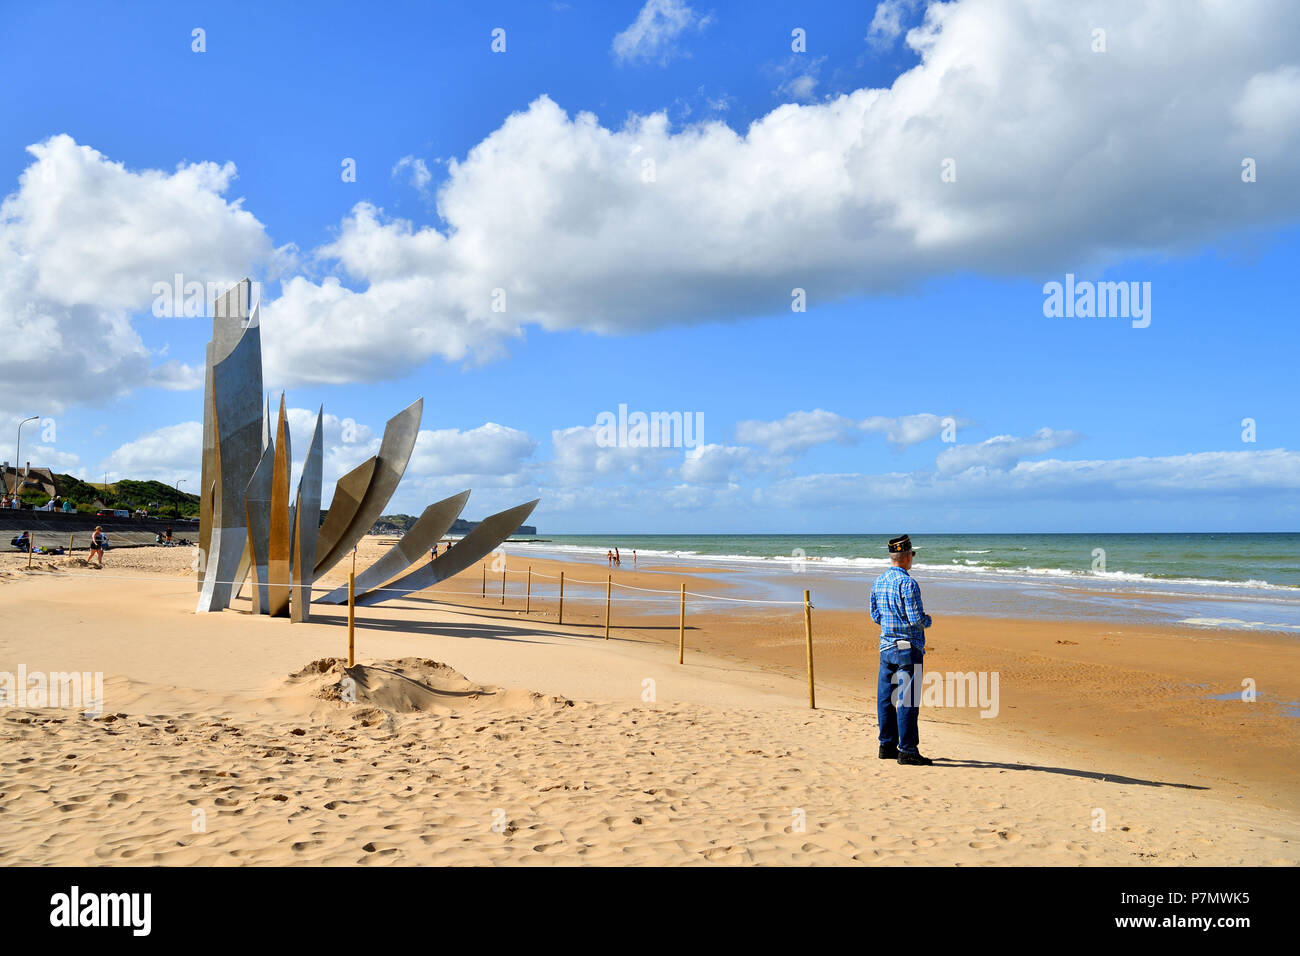 Francia, Calvados, plage de Vierville sur Mer (Omaha Beach), Les Braves scultura dedicata al sessantesimo anniversario dello sbarco in Normandia, veterano americano la raccolta di un po' di sabbia sulla spiaggia Foto Stock